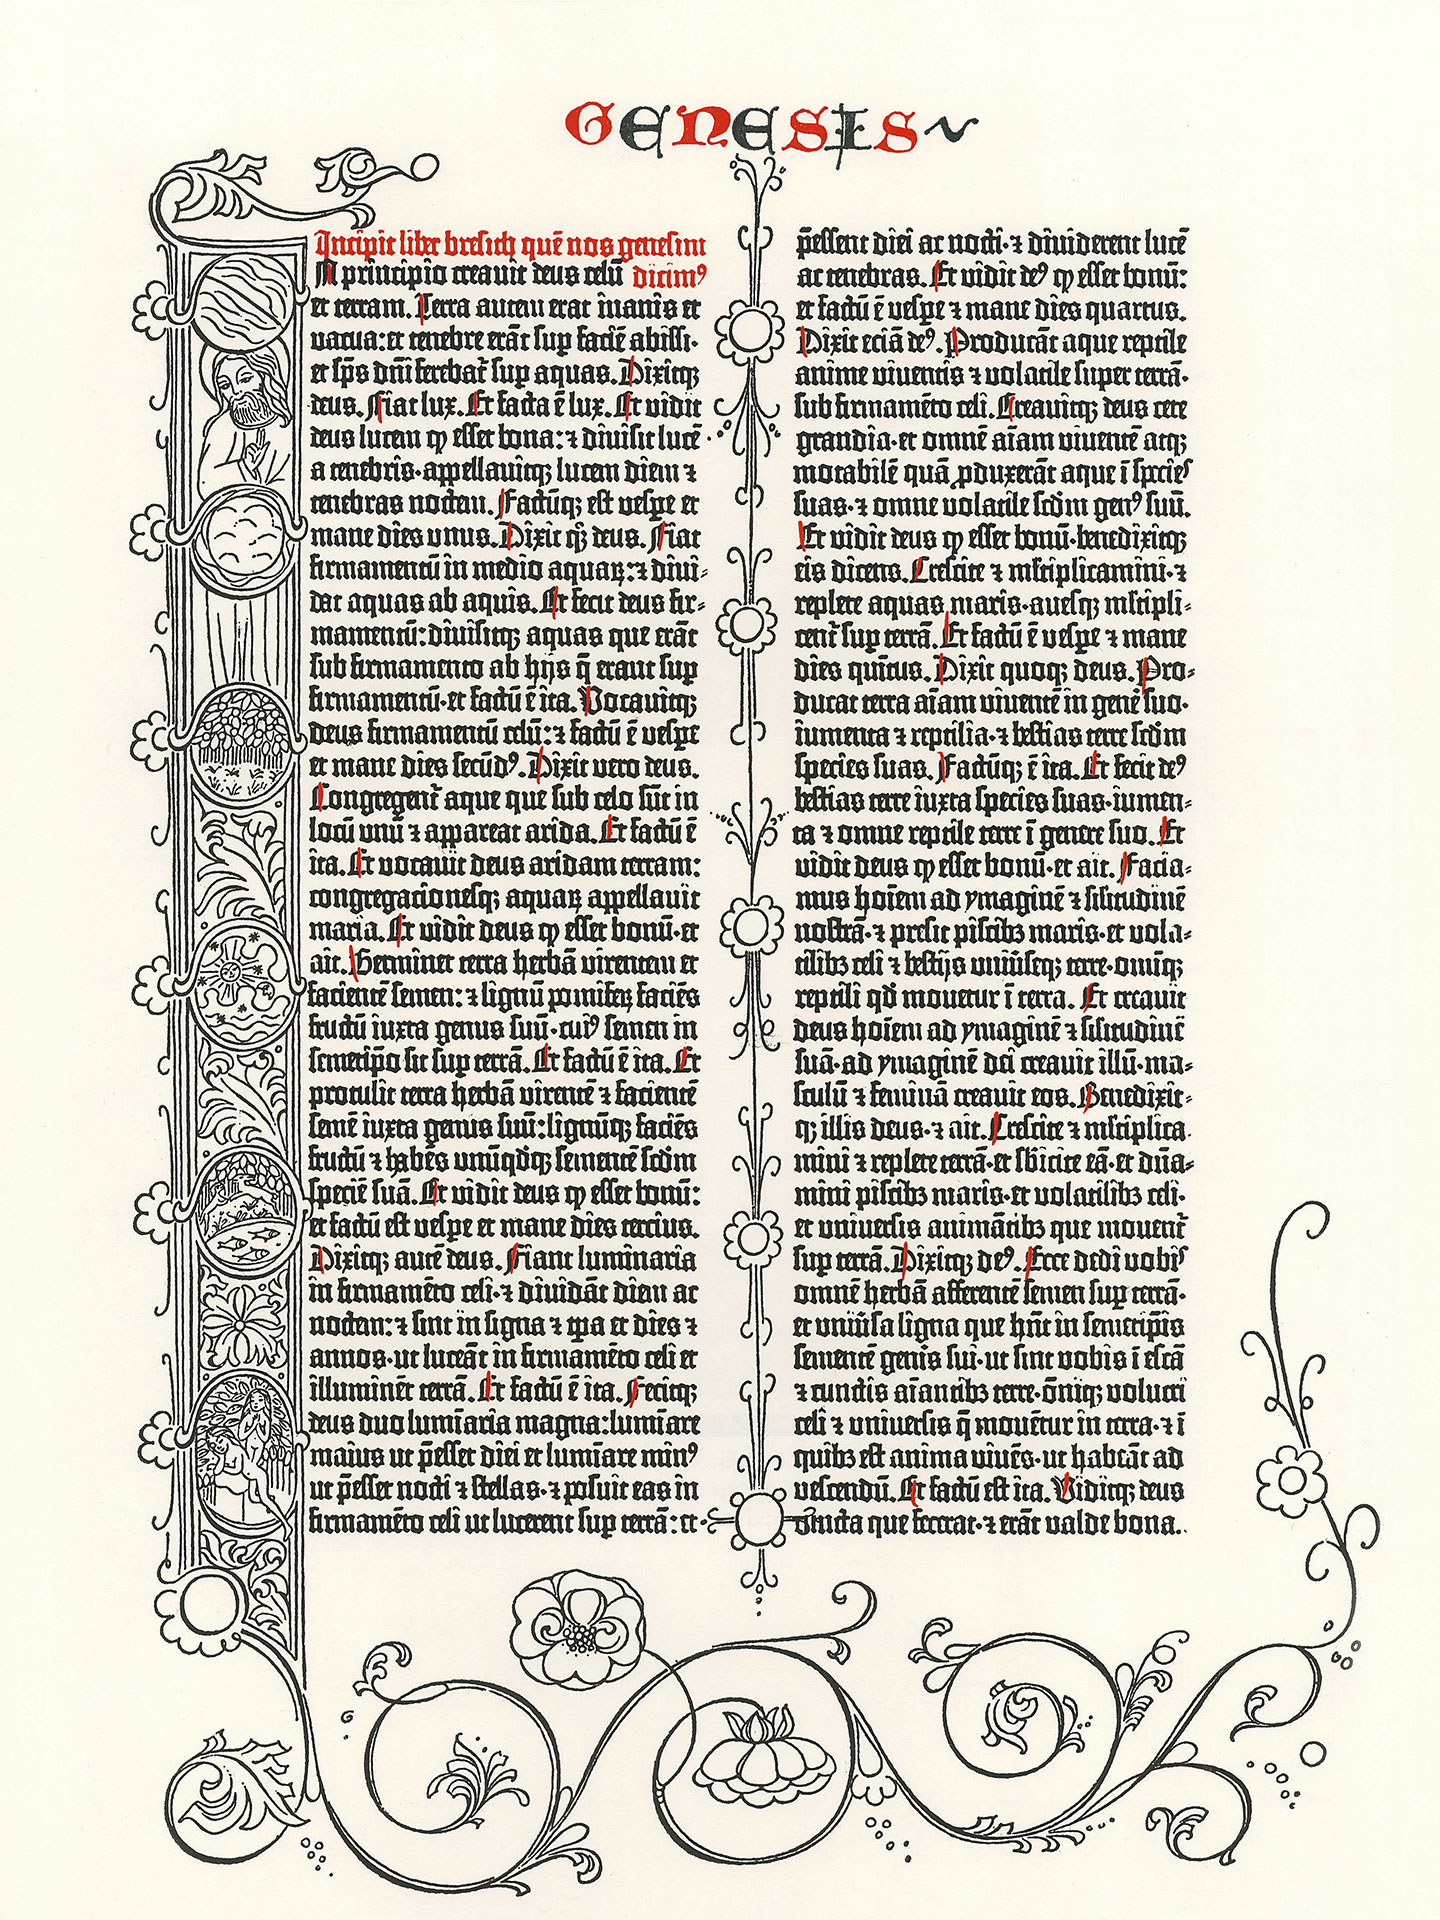 Genesis. Pressendruck Gutenberg-Bibel